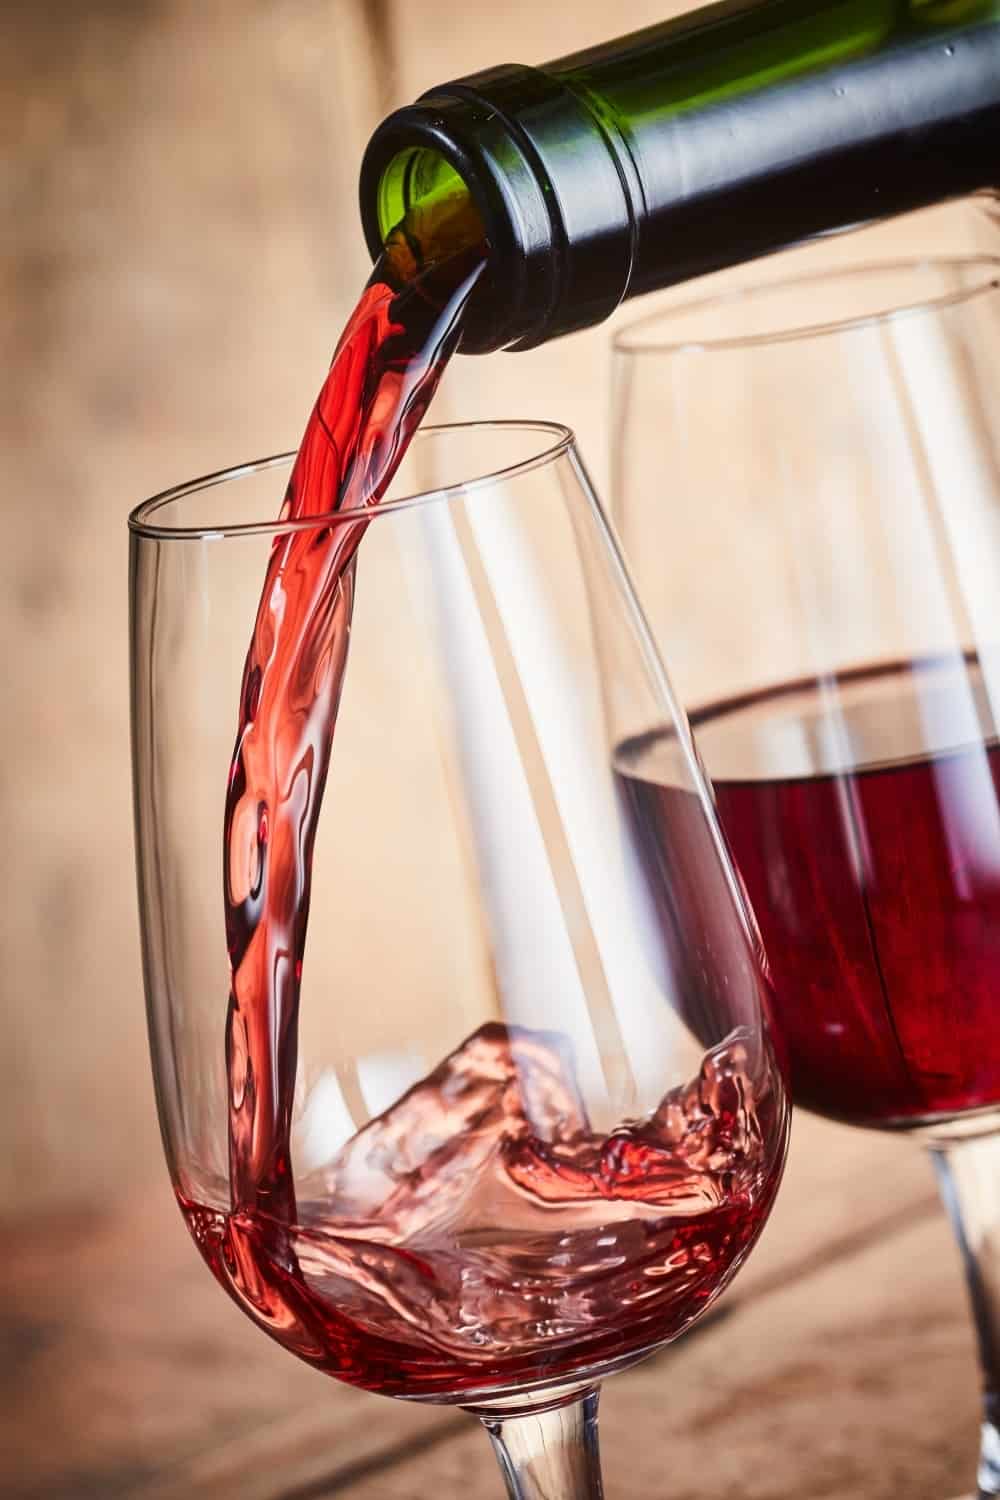 Servir dos copas de vino de Oporto tinto fortificado de una botella